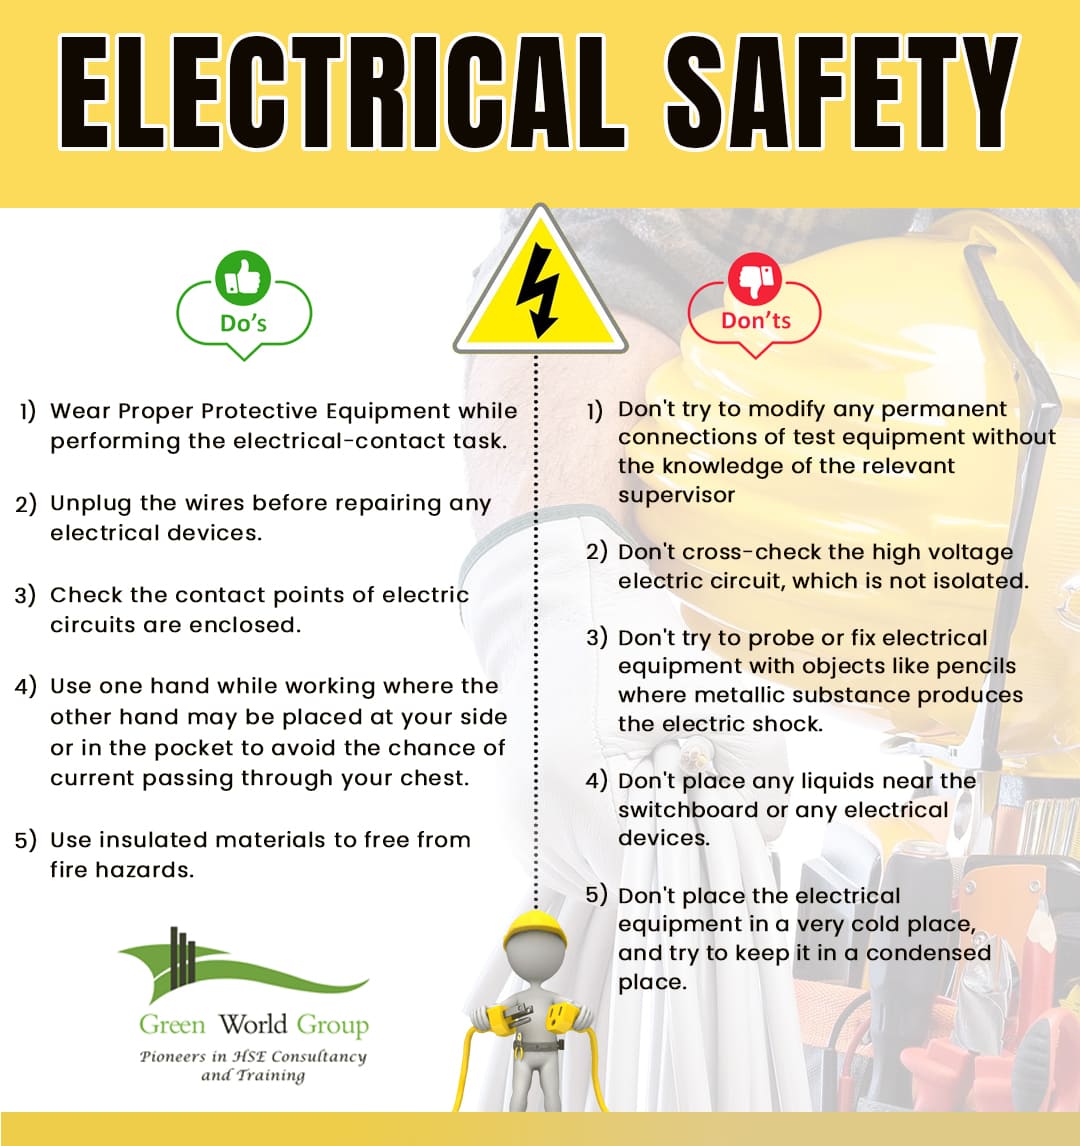 Electrical Safety Electrical Safety Home Safety Tips - vrogue.co